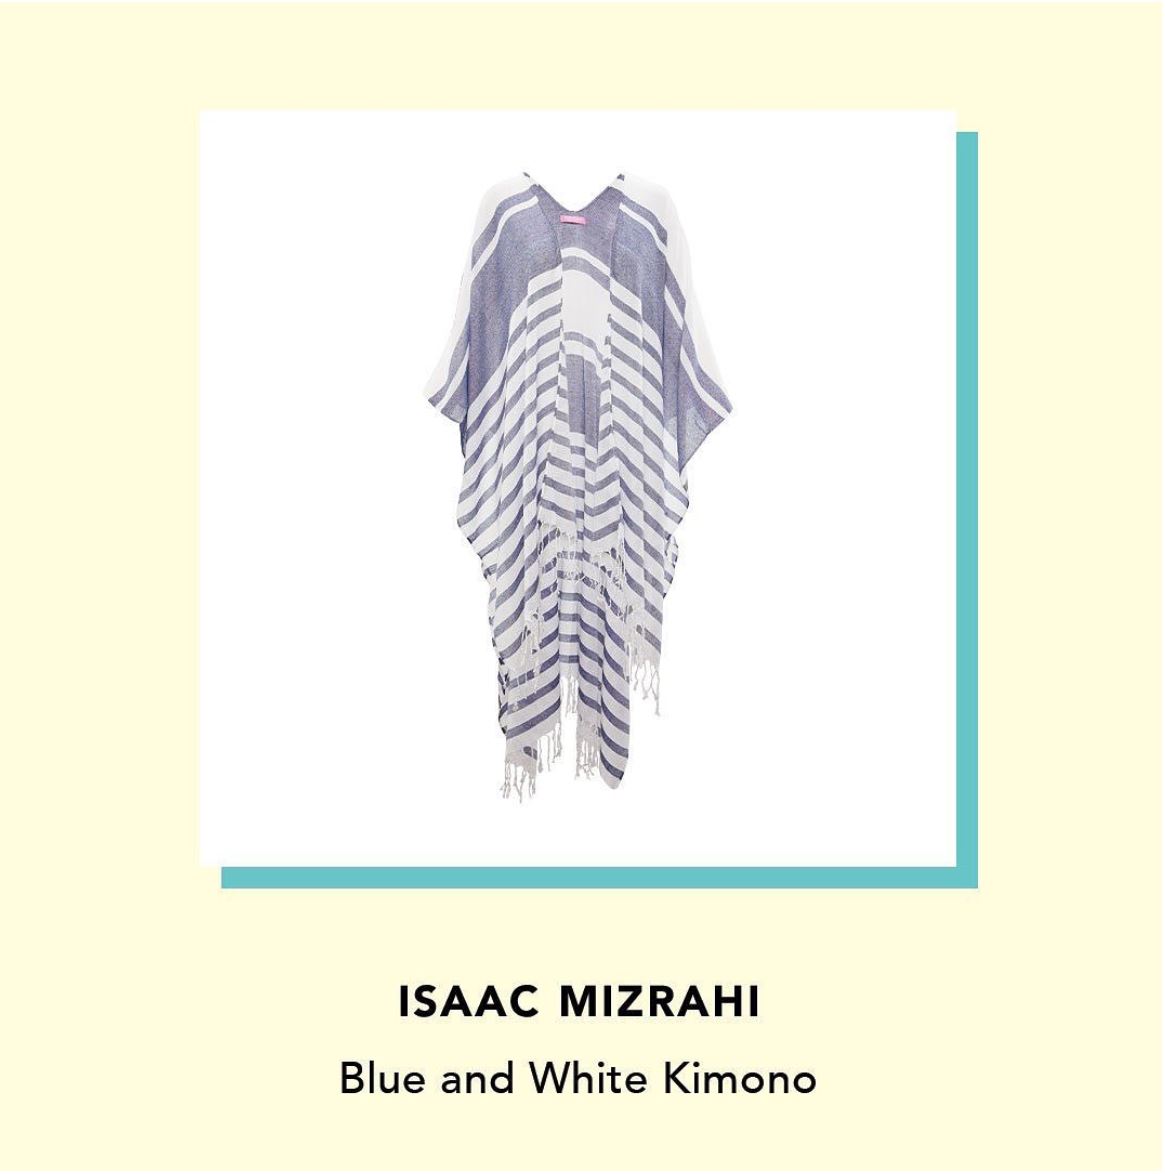 ISAAC MIZRAHI Blue and White Kimono